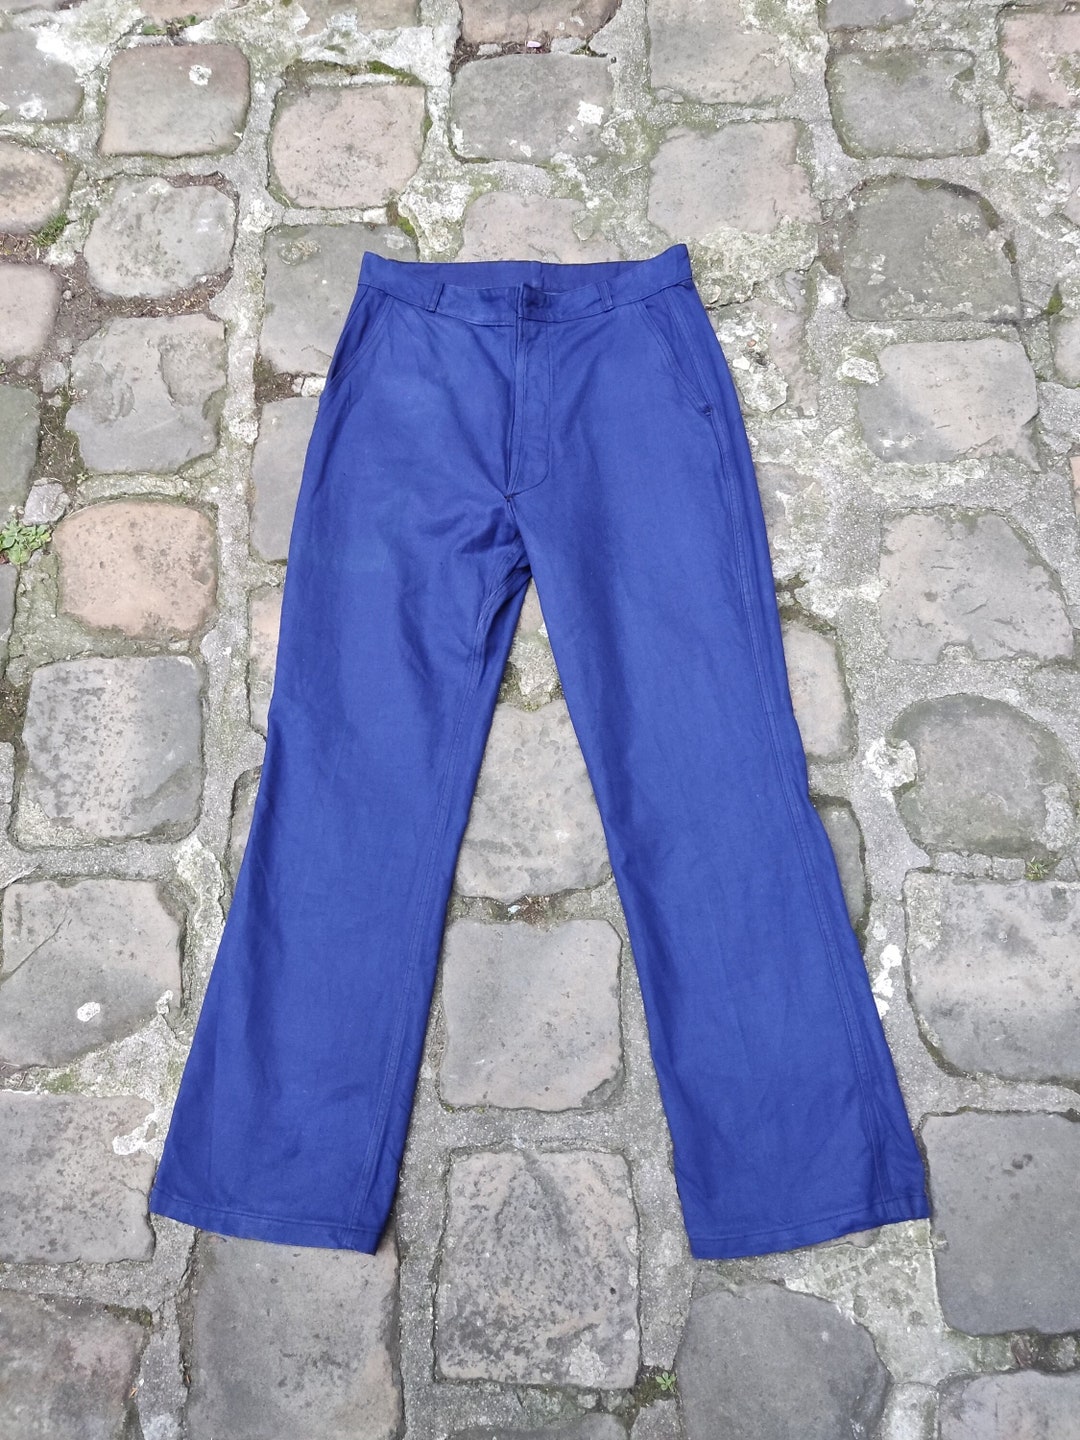 Pantalon De Travail Bleu Danton 1960s Taille 44 Vêtement De - Etsy